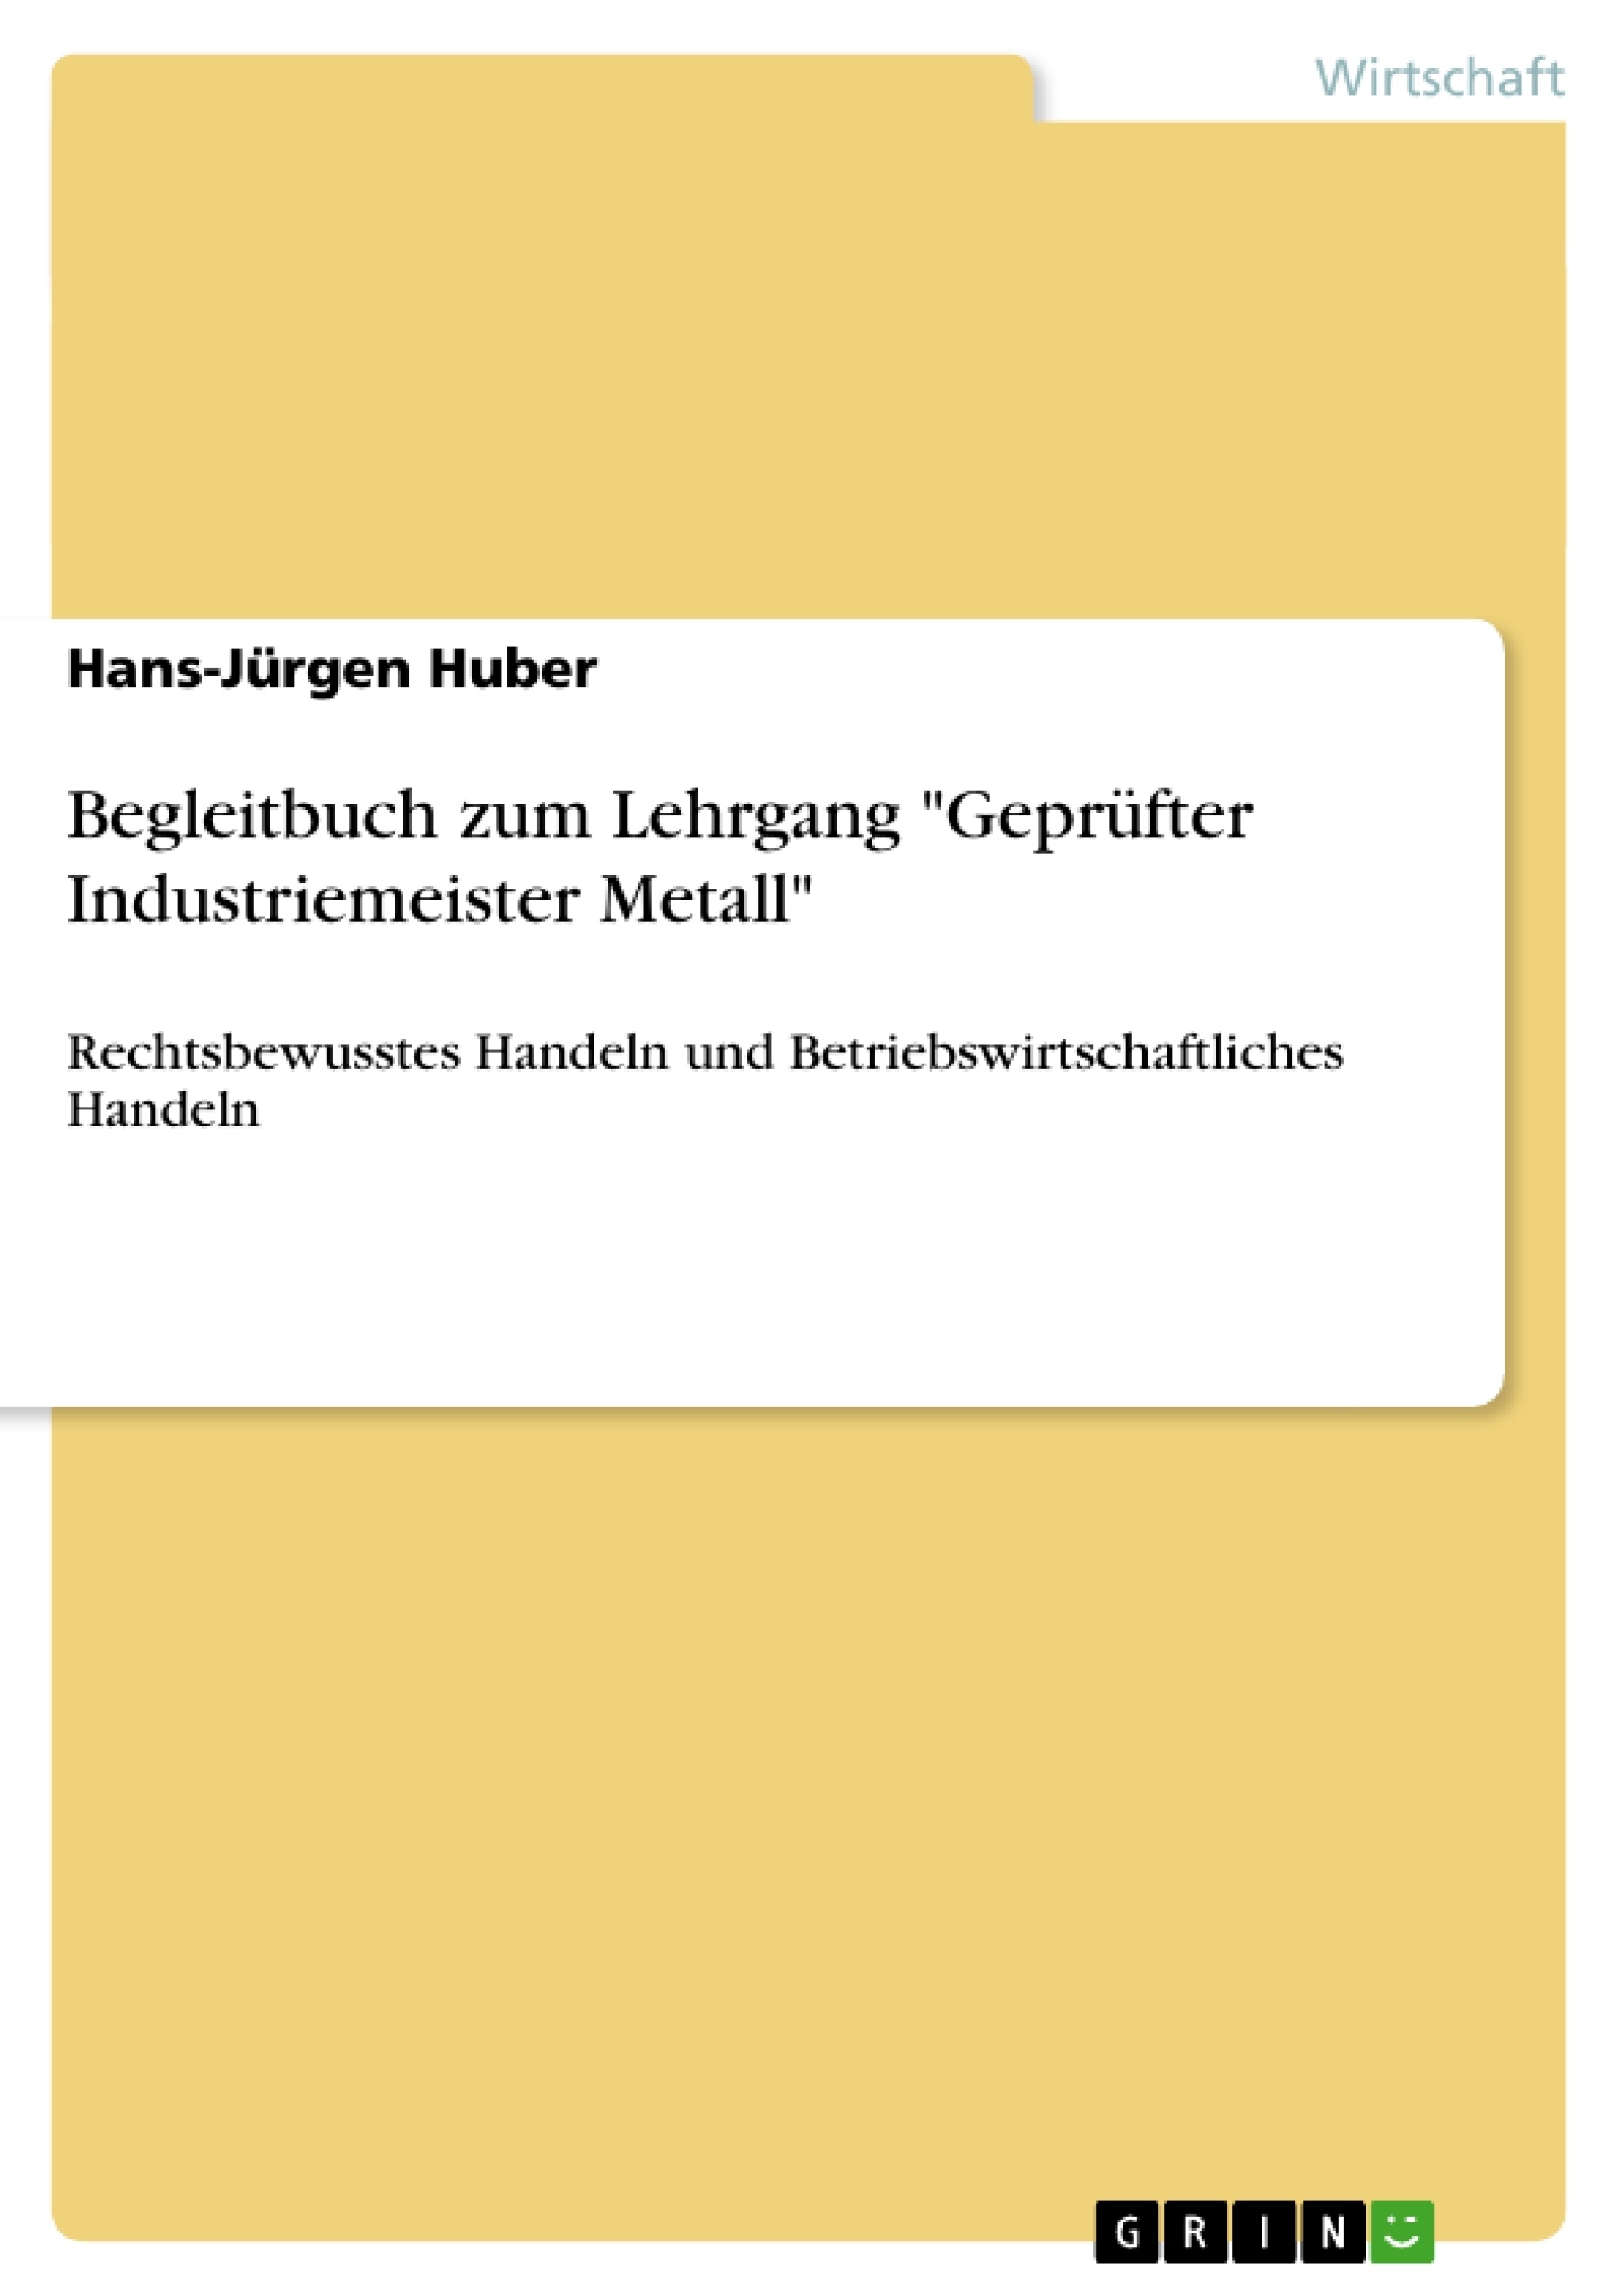 Título: Begleitbuch zum Lehrgang "Geprüfter Industriemeister Metall"